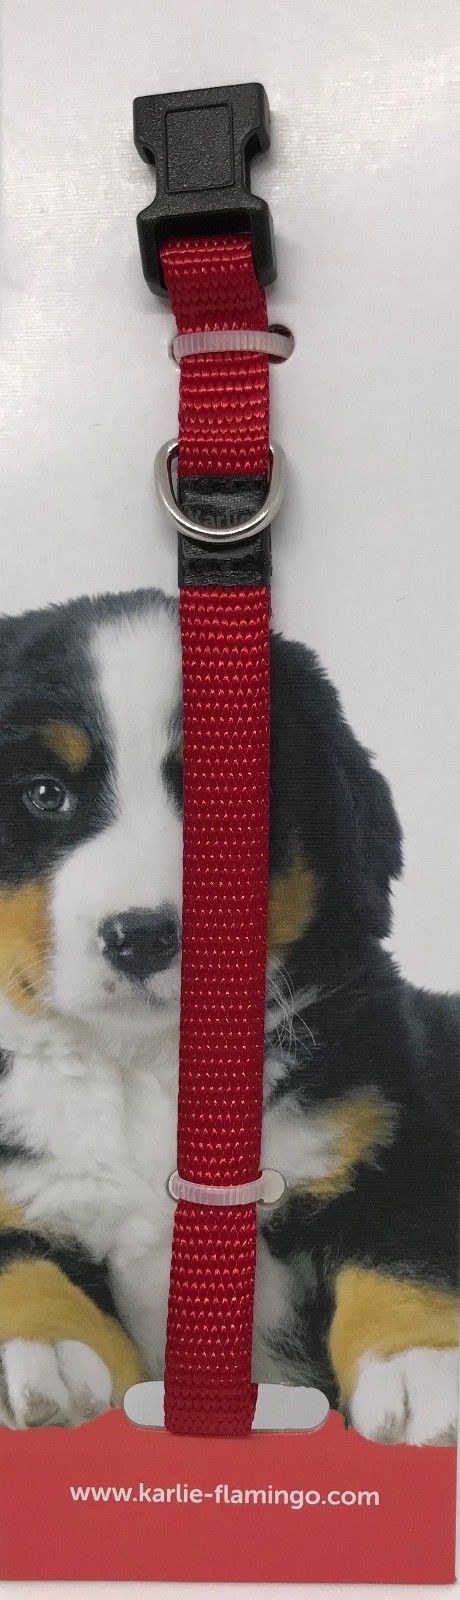 Karlie verstellbares Welpen Hunde Halsband Welpenhalsband 4 Farben 20 30 cm 10mm 253230056952 4